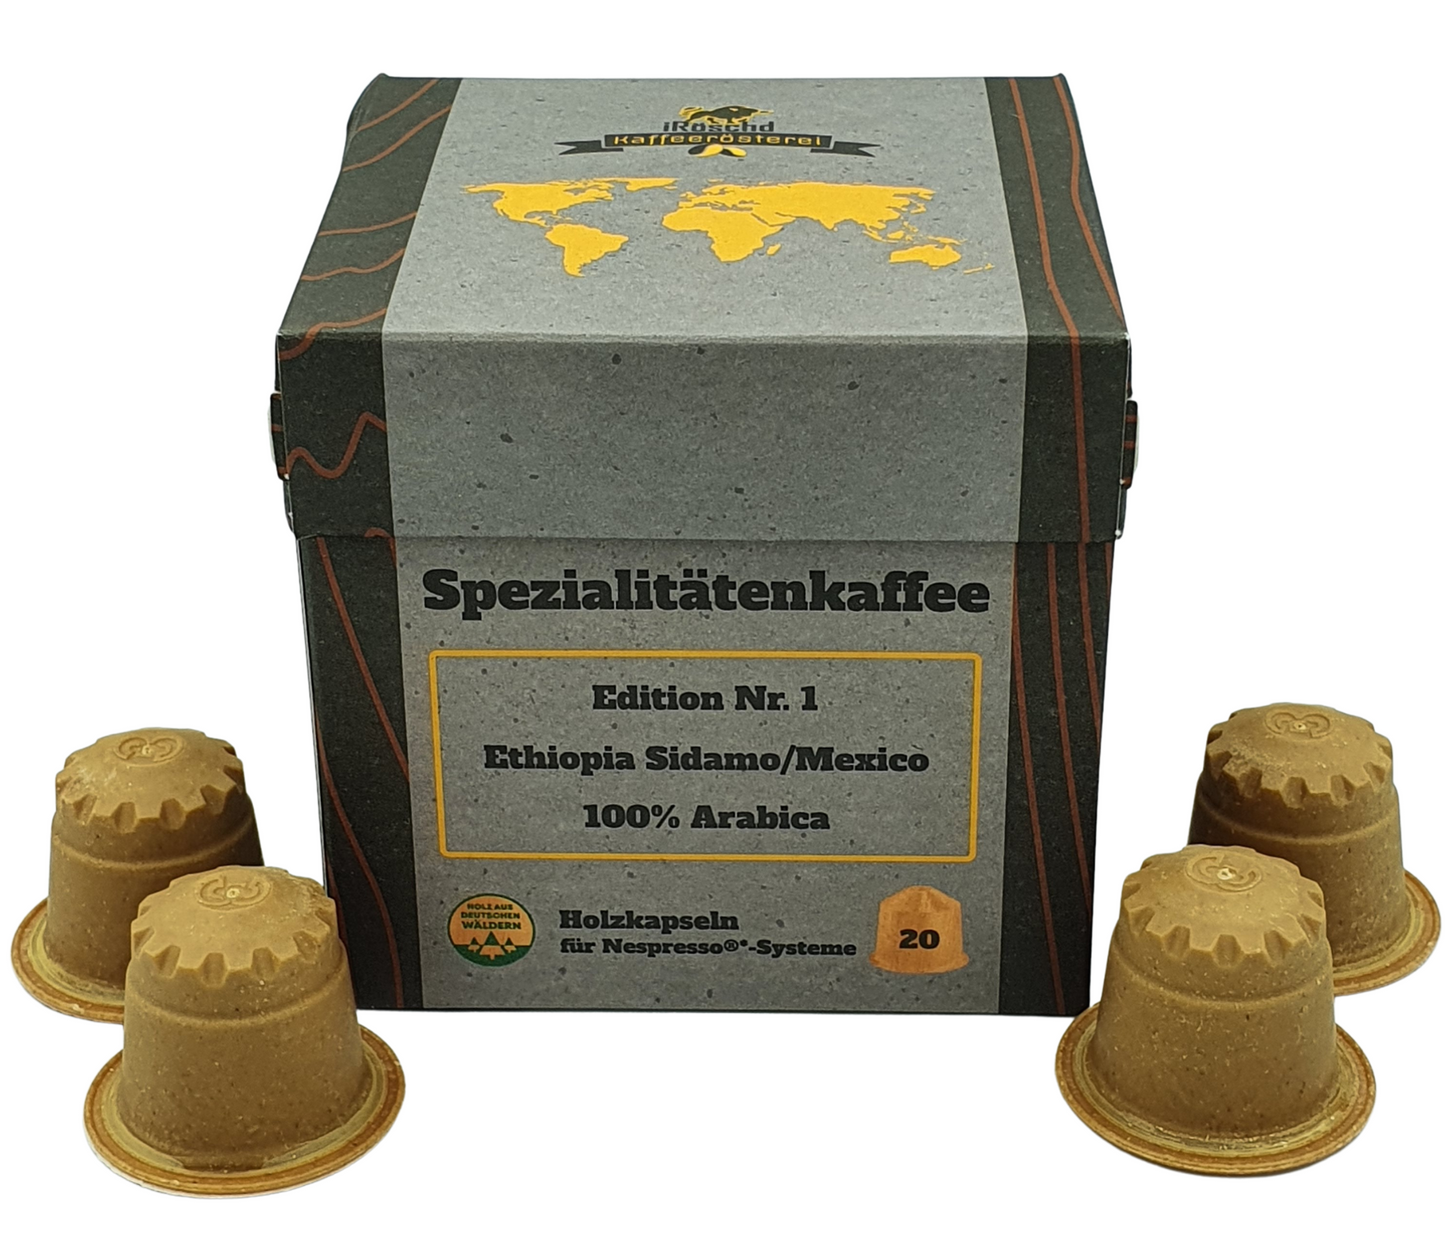 Die Edition Nr. 1 des Spezialitätenkaffees in Holzkapseln. 20 Holzkapseln für Nespressomaschinen. Mit 100% nachhaltigen Materialien. Kaffee aus Ethiopien Sidamo und Mexico. 100% Arabica Kaffee.